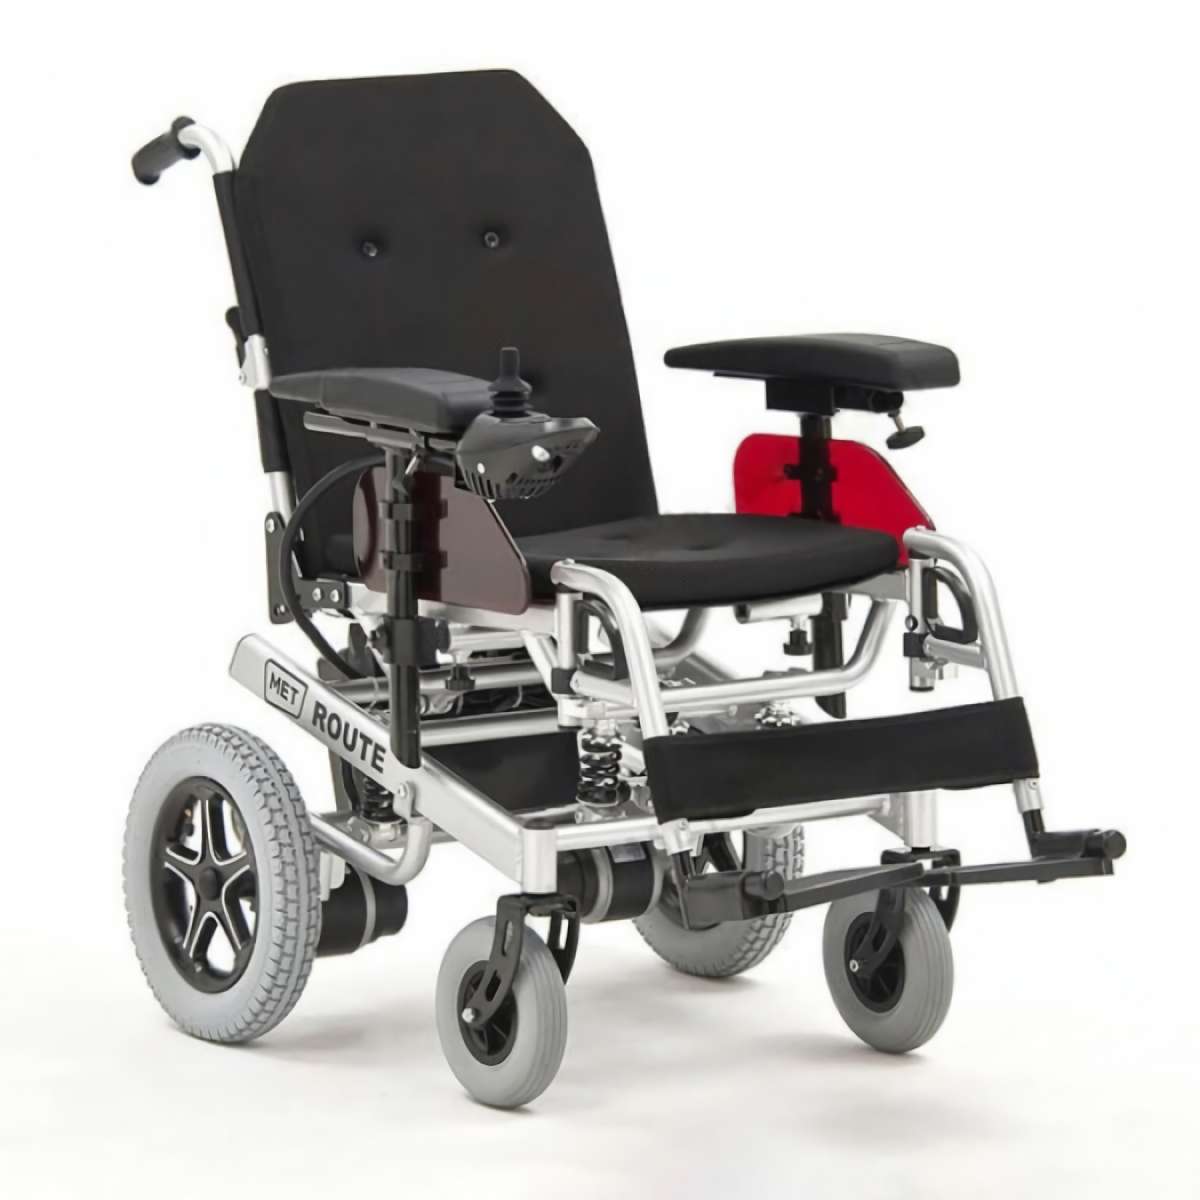 Алюминиевая кресло-коляска МЕТ ROUTE 14